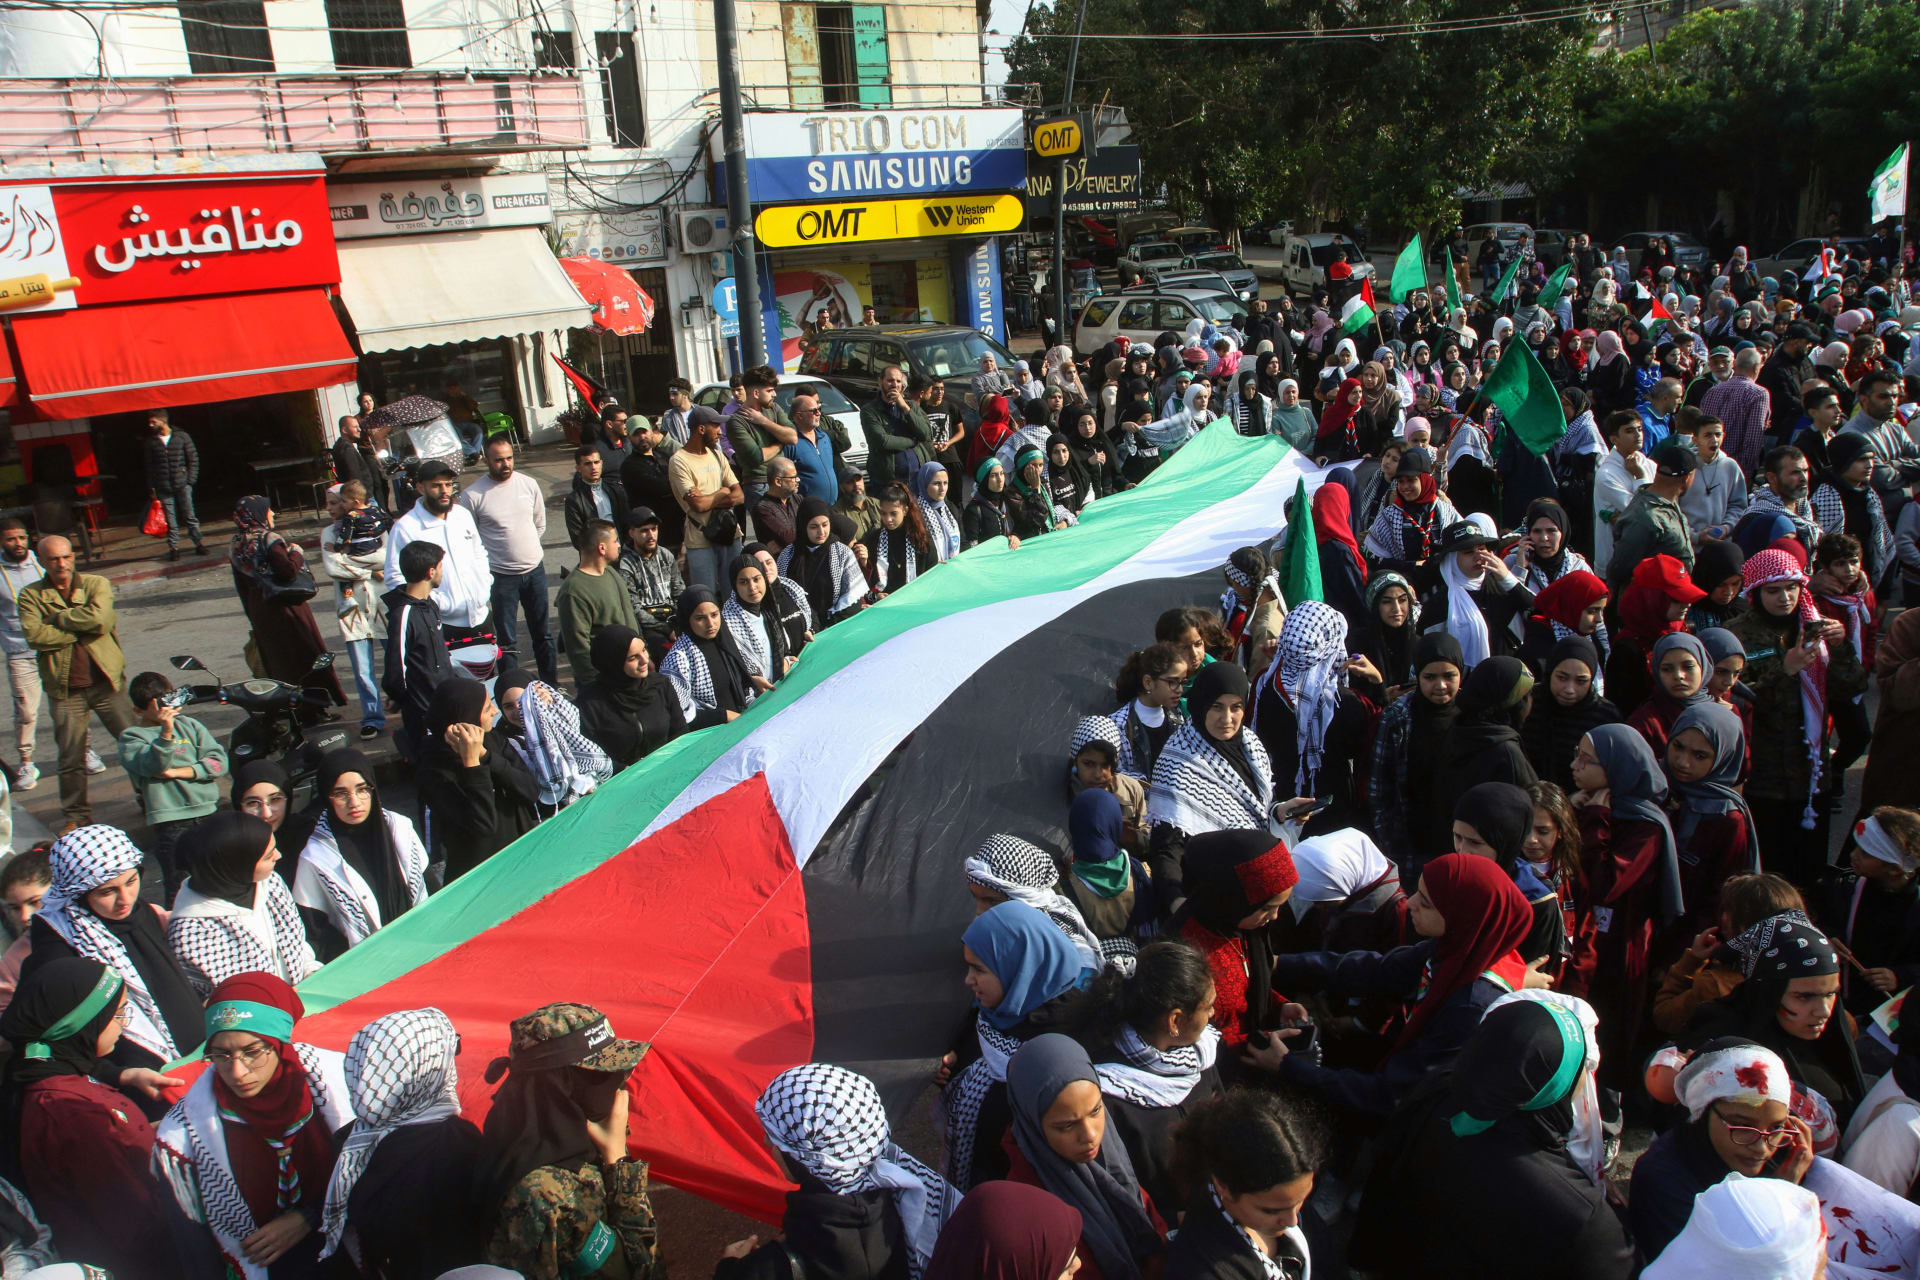 لبنان يعلن إغلاق المكاتب الحكومية والمؤسسات العامة والمدارس الاثنين "تضامنا مع غزة"